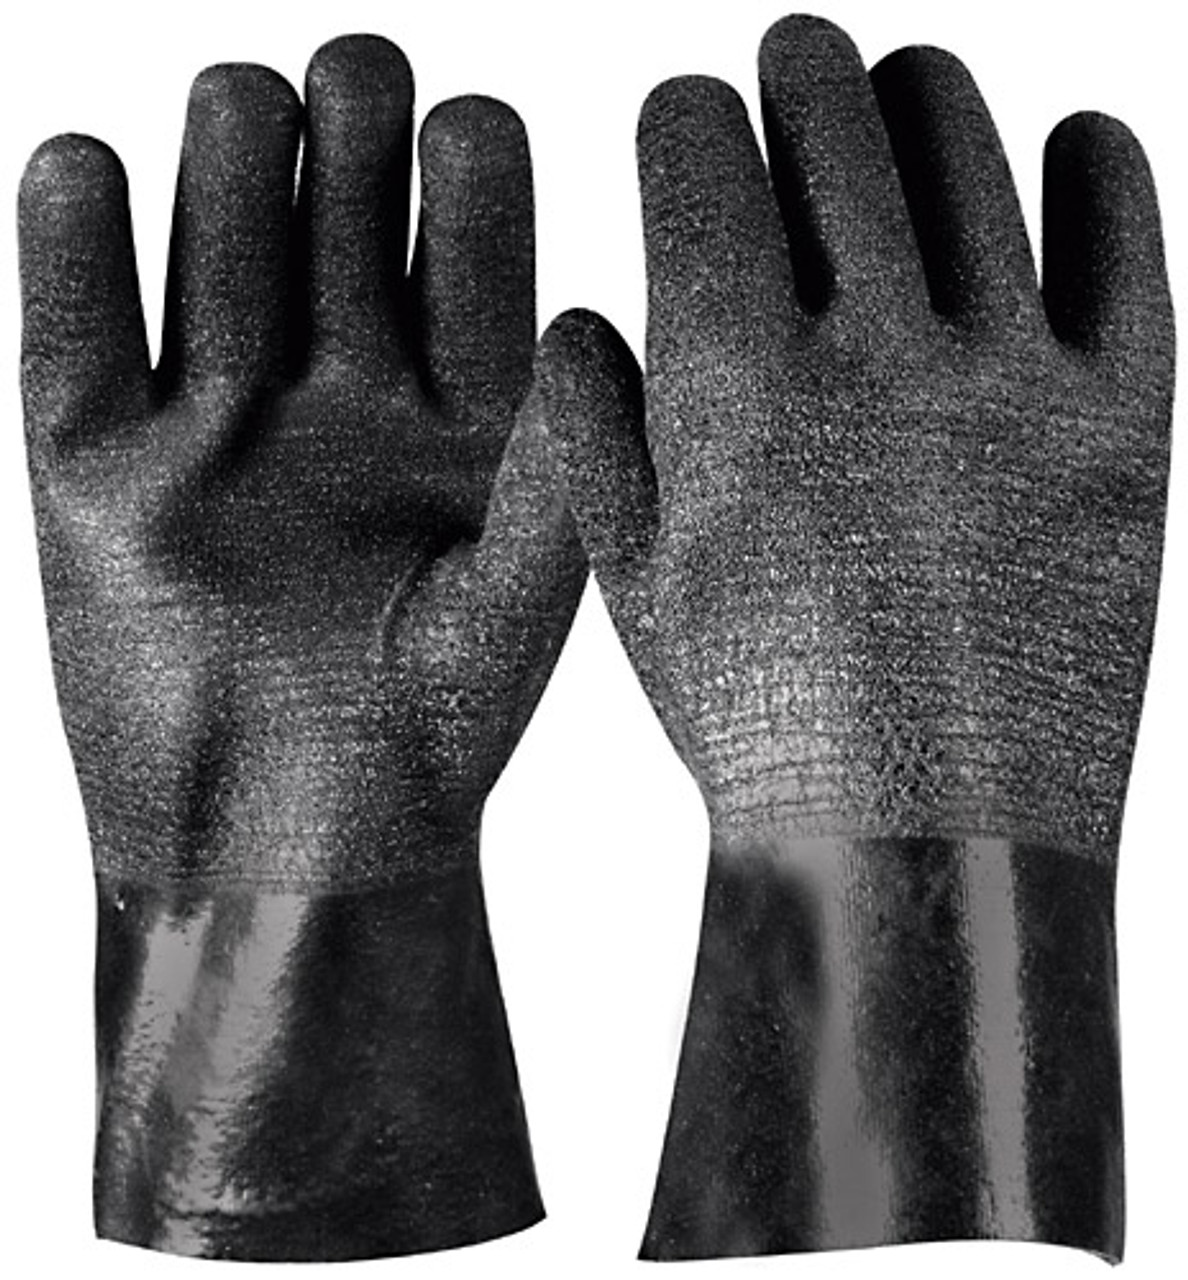 Truper Neoprene Gloves Medium -2 Pack #14295